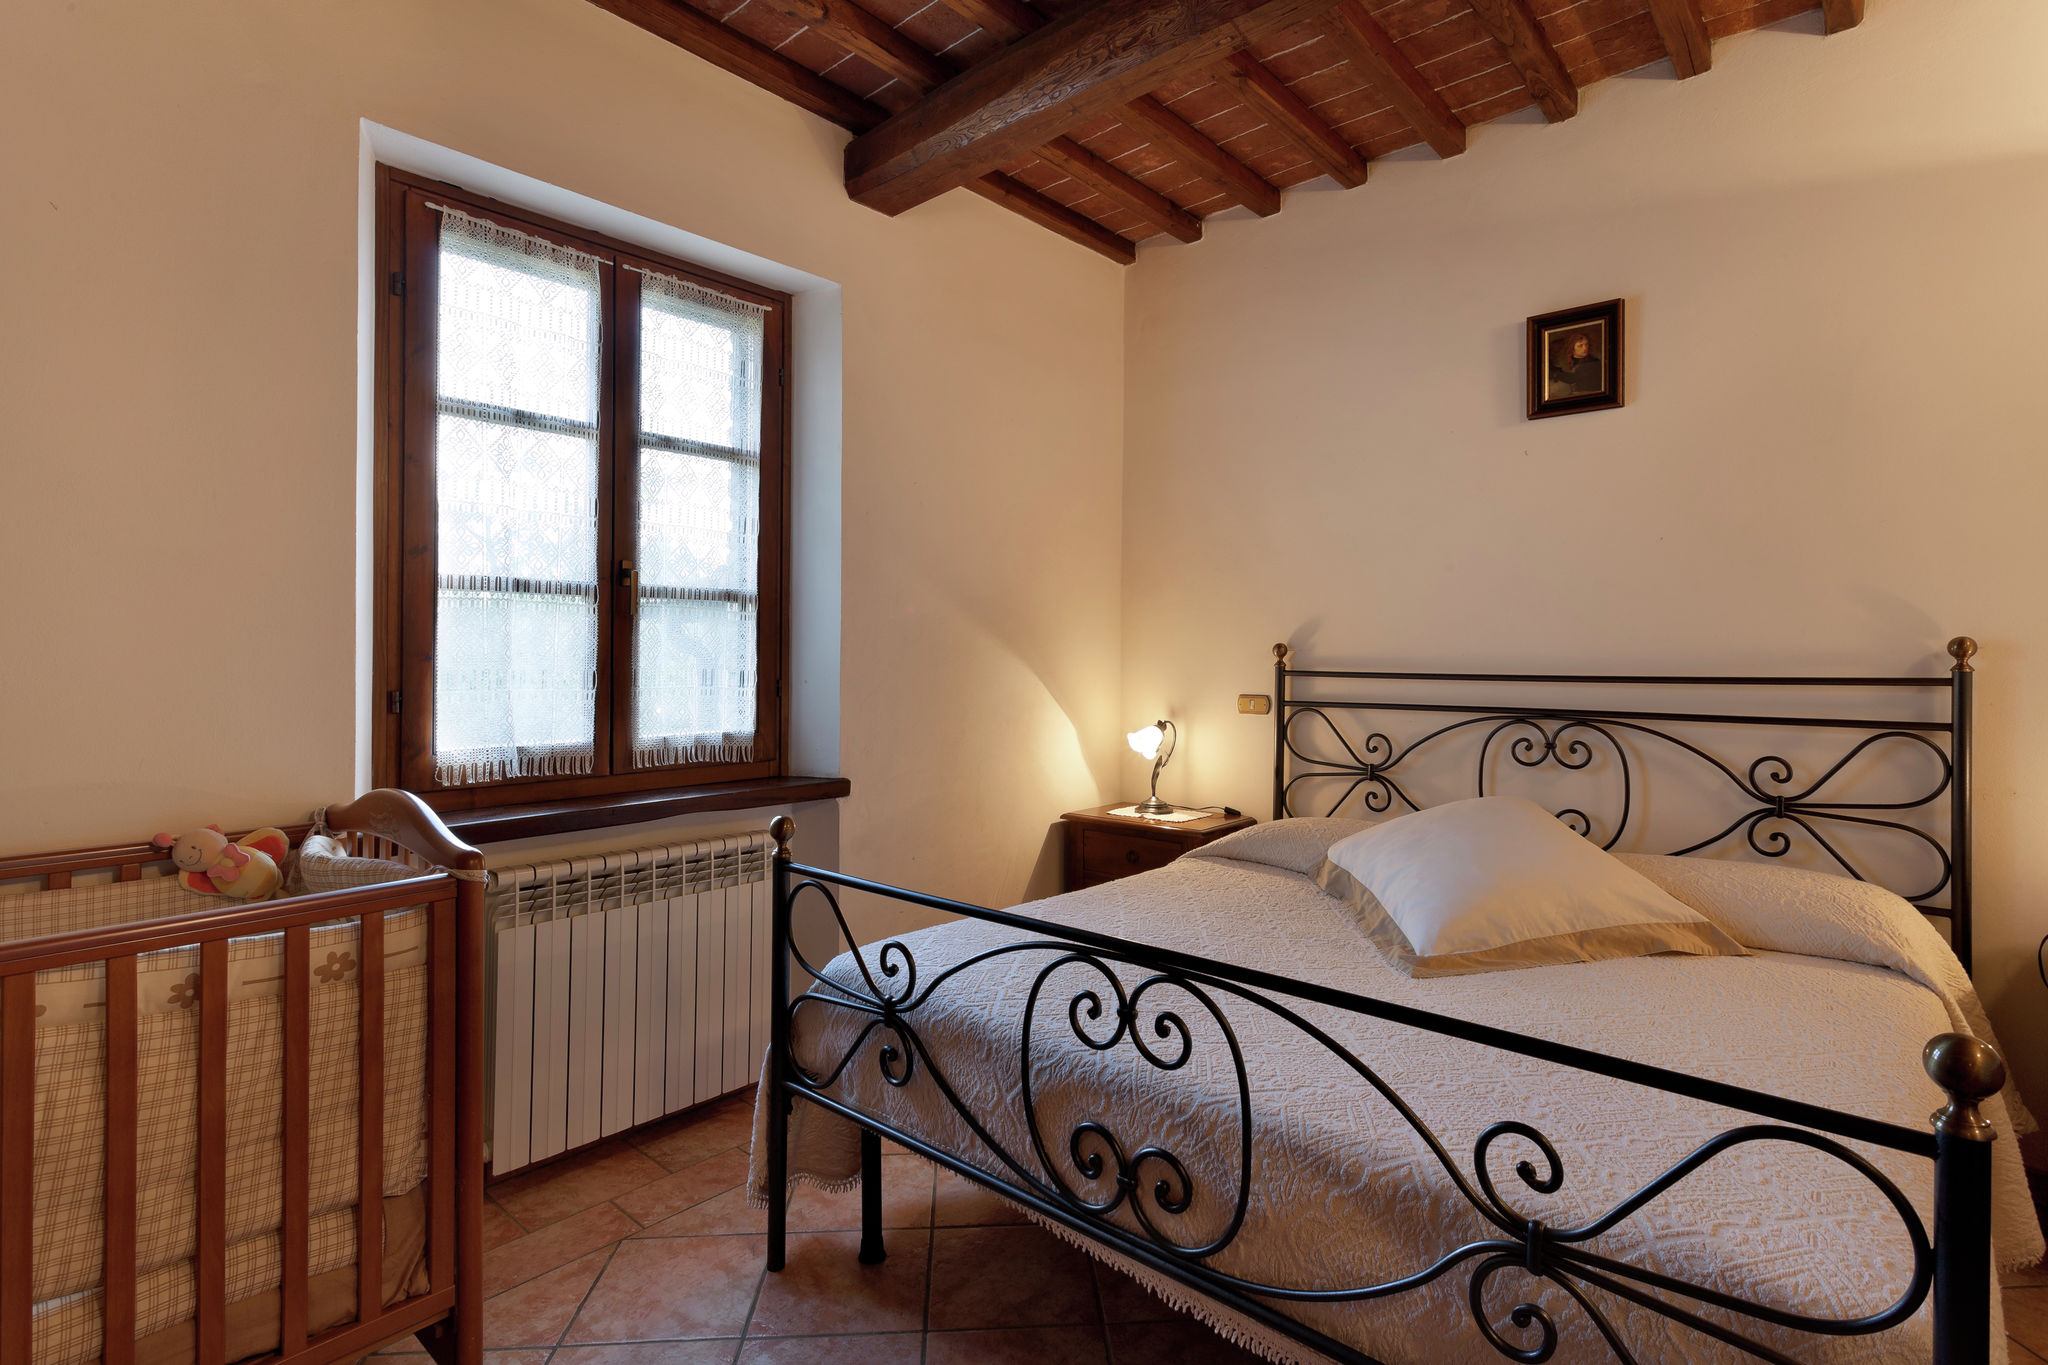 Gezellig vakantiehuis in Toscane op groot terrein